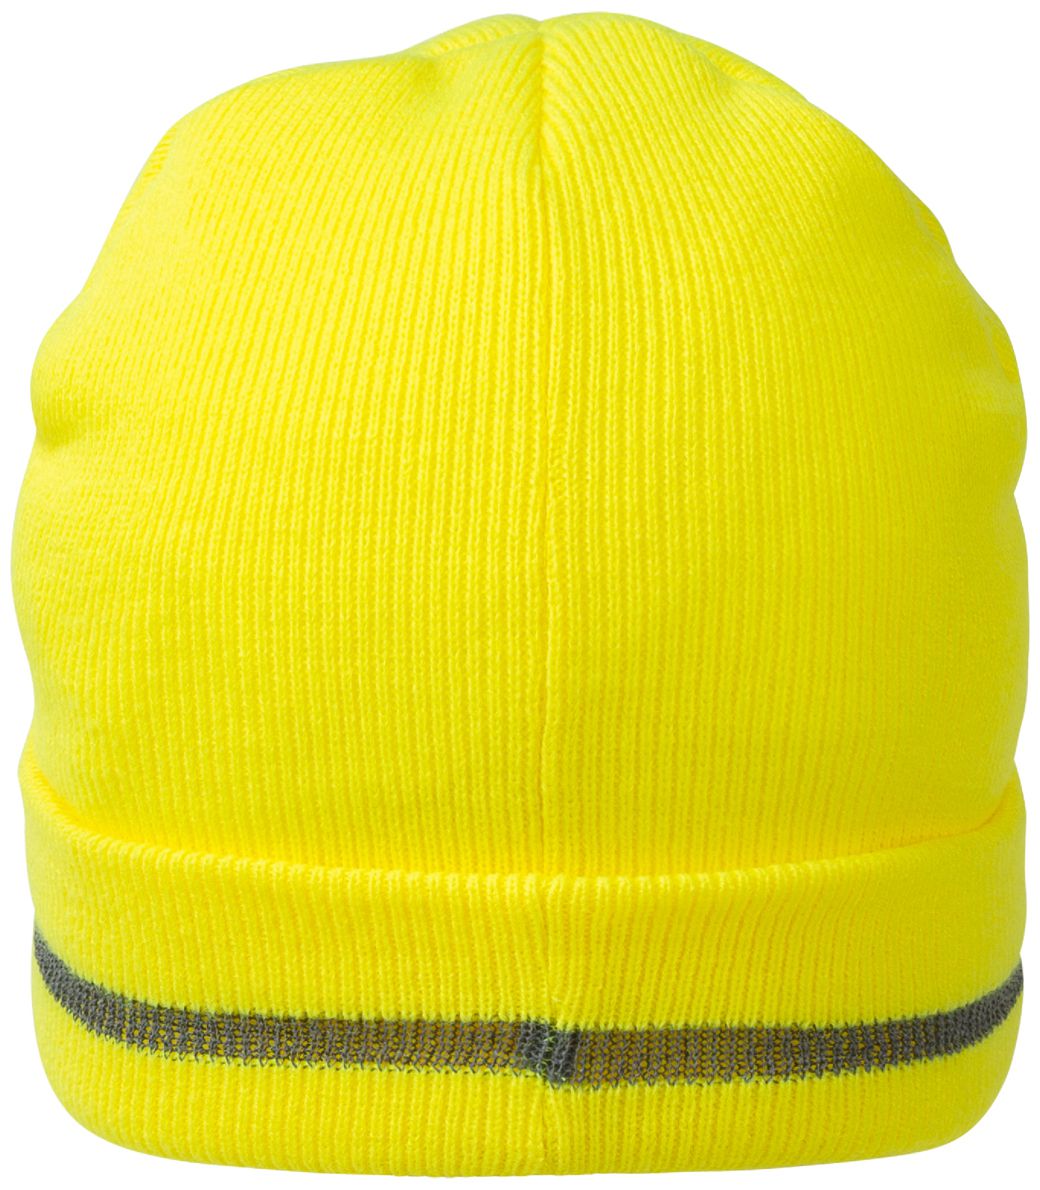 NITRAS KIDS Winter-Mütze - Strick-Mütze für Kinder - warm & weich gefütterter Beanie für Jungen & Mädchen